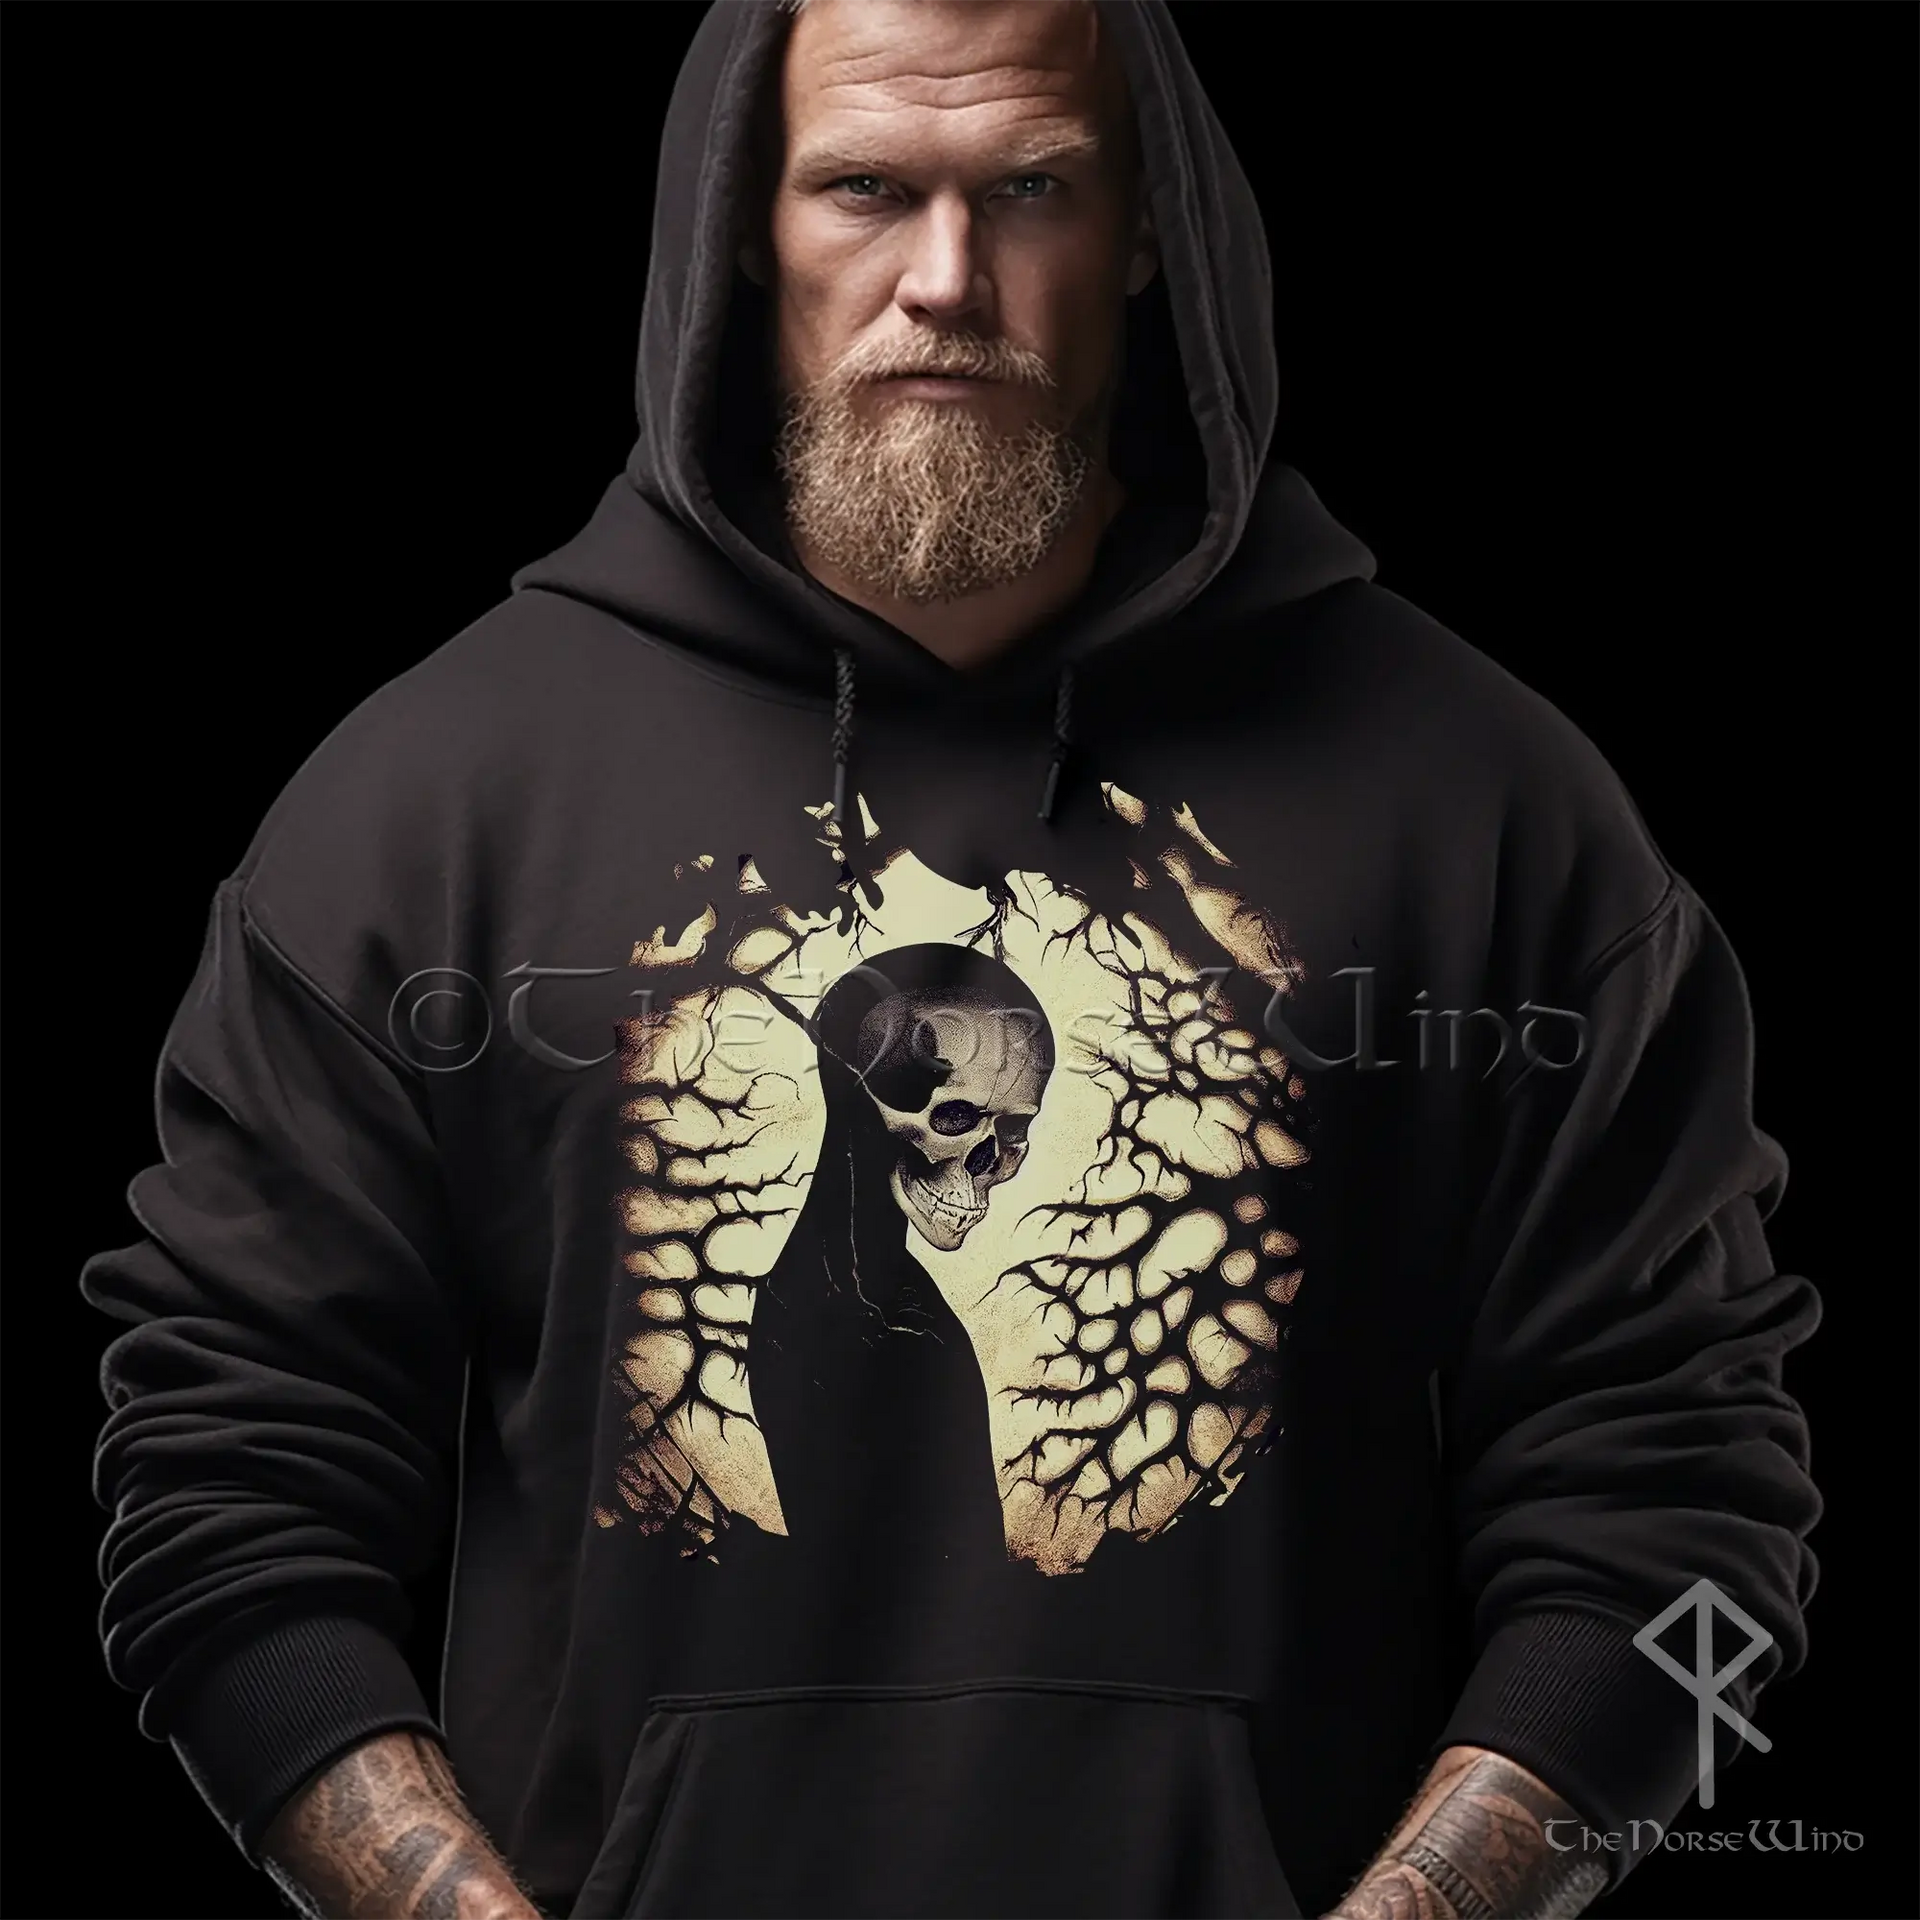 Best Deal for Men Viking Raven Zip Hoodie, 3D Printed Nordic Rune Tattoos